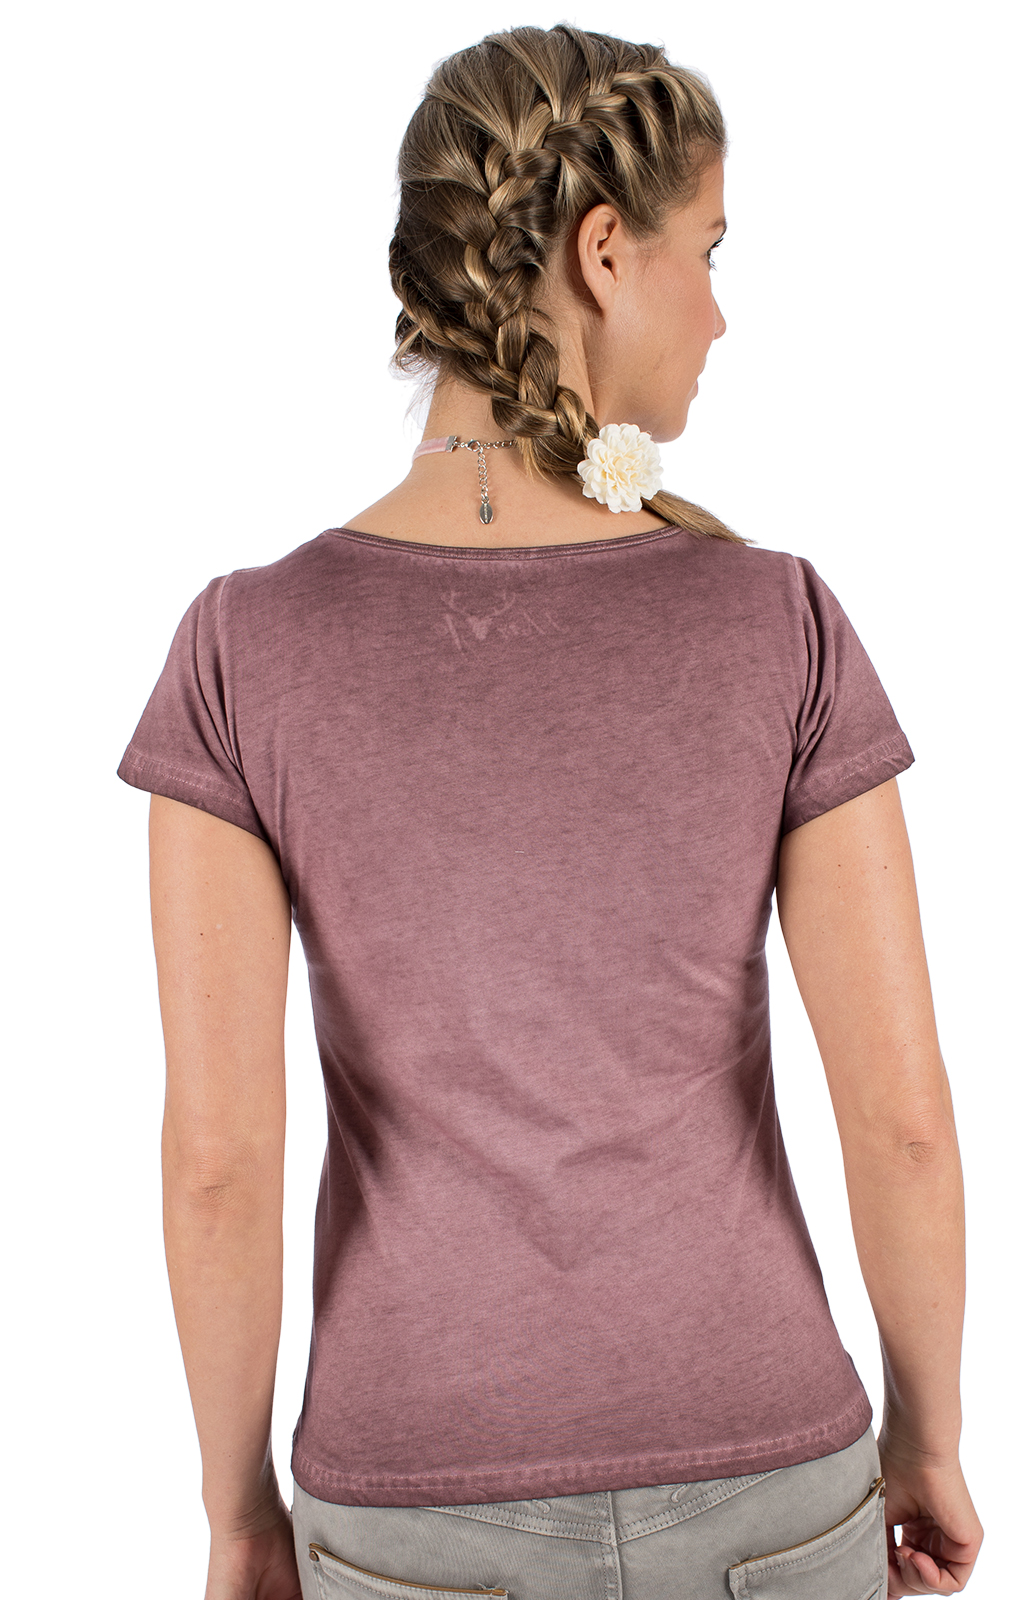 weitere Bilder von Trachten T-Shirt W110 - MICHAELA mauve rosa